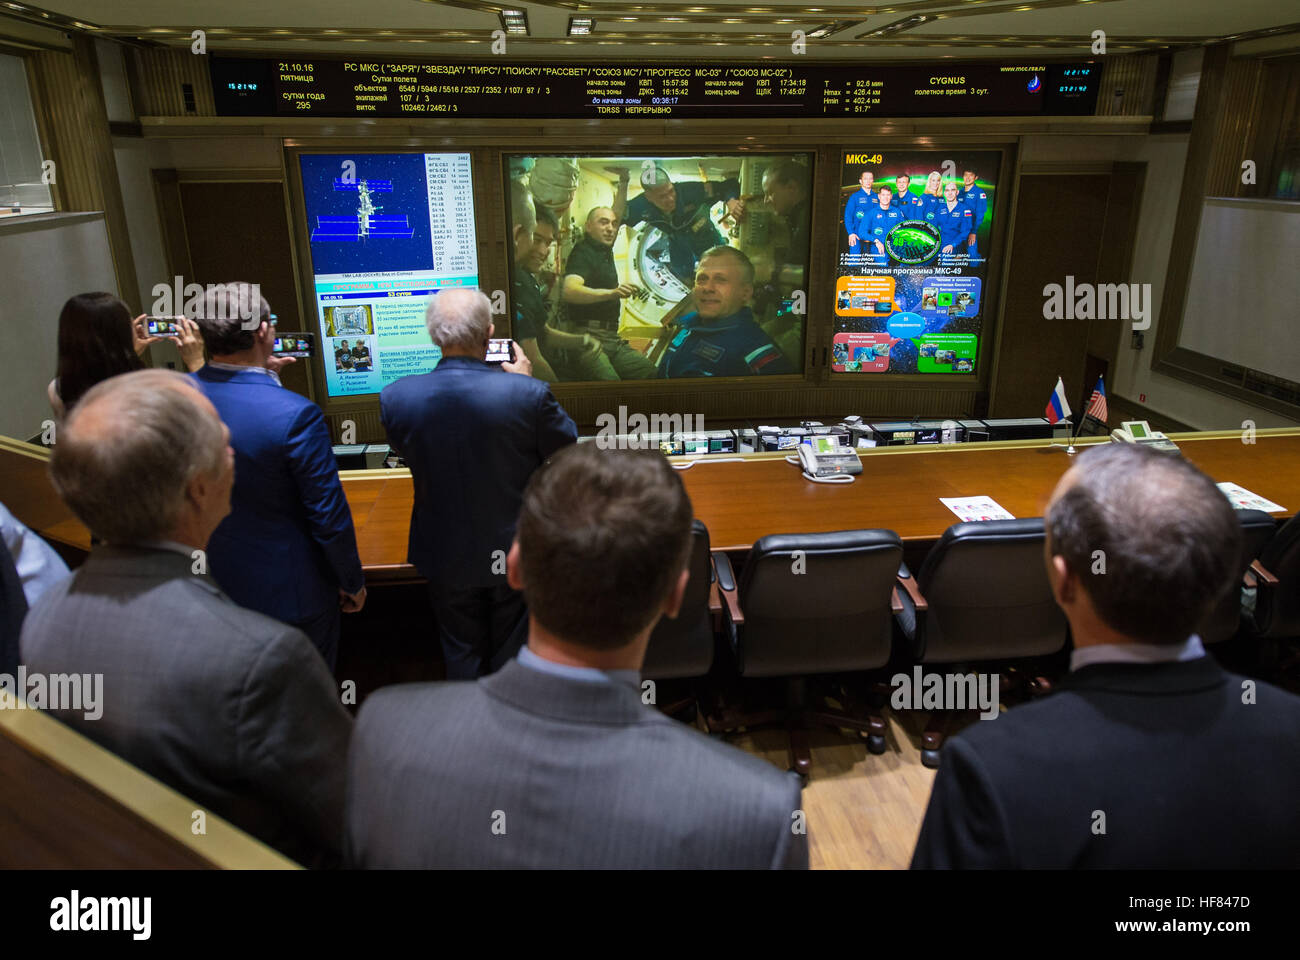 Shane Kimbrough de NASA y Andrey Borisenko de Roscosmos son vistos en las pantallas del Centro de Control de Misión en el centro de Moscú con la expedición 49 Comandante Anatoly Ivanishin de Roscosmos e ingenieros de vuelo de la NASA y Rubins Kate Takuya Onishi de la Agencia de Exploración Aeroespacial de Japón (JAXA) poco después de entrar en la Estación Espacial Internacional después de la apertura de la escotilla de la nave espacial Soyuz MS-02 unas pocas horas después del acoplamiento el viernes, 21 de octubre de 2016 en Korolov, Rusia. La nave espacial Soyuz MS-02 acoplado a la Estación Espacial Internacional a las 5:52 A.M. EDT EL VIERNES, 21 de octubre y las escotillas se abrieron a las 8:20 Foto de stock